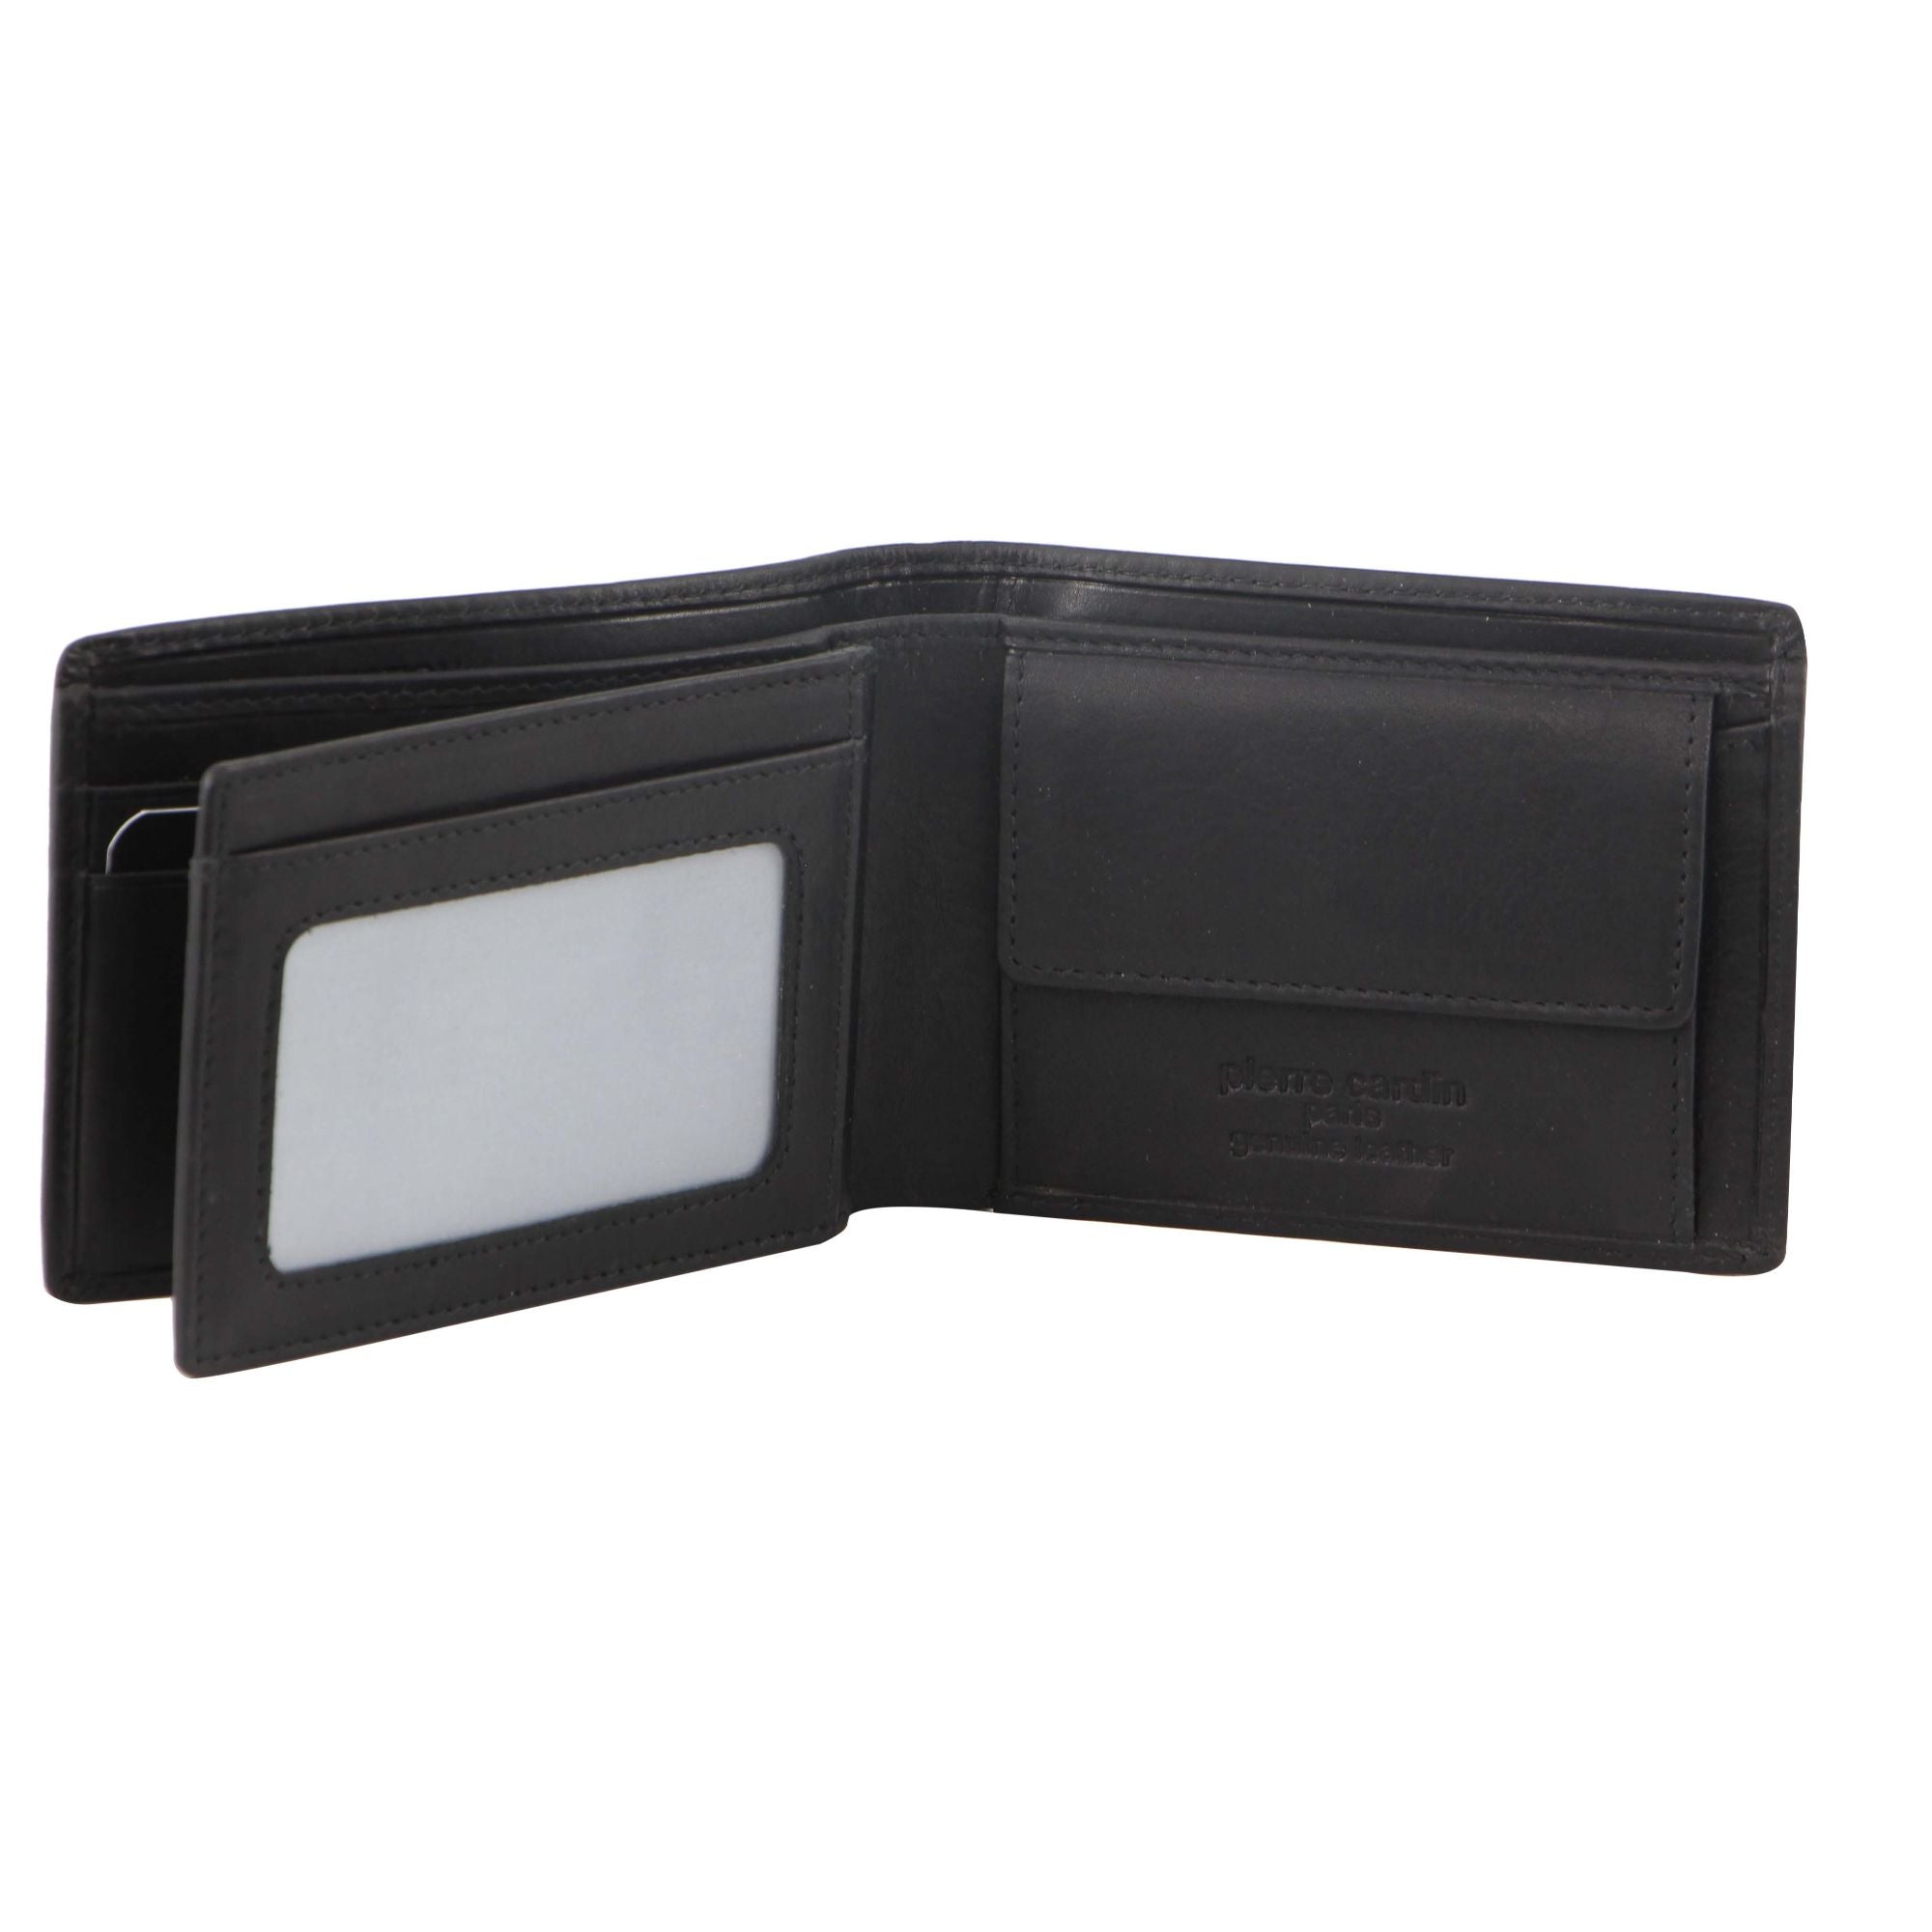 Pierre Cardin Rustic Leather Men's Bi-Fold Wallet in Black